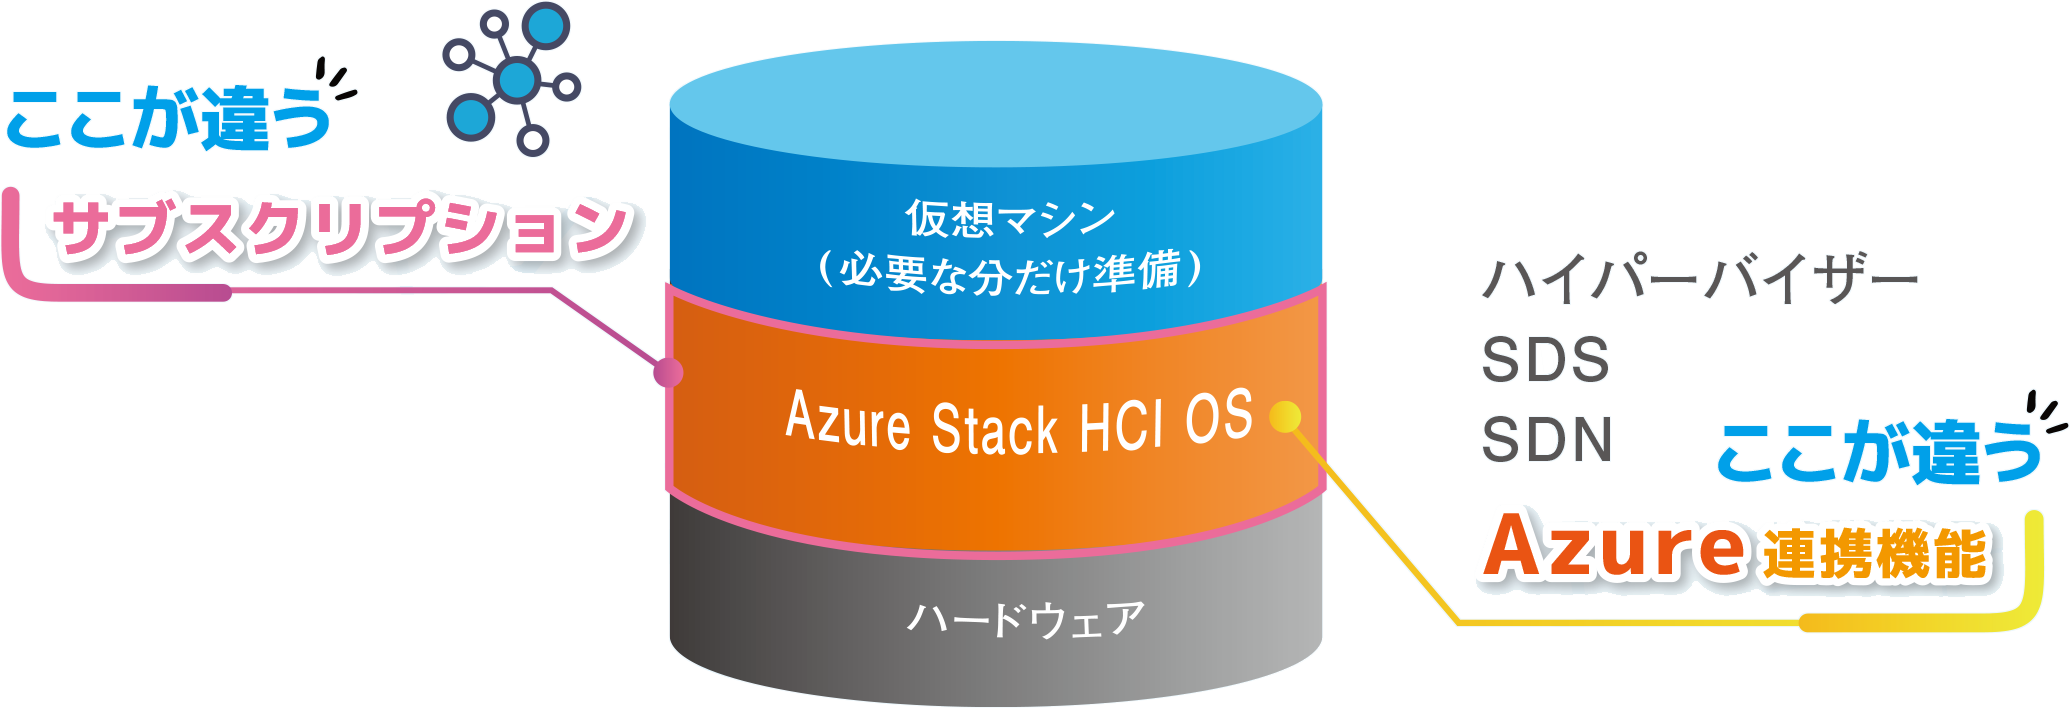 仮装マシン(必要な分だけ準備) Azure Stack HCI OS ここが違う サブスクリプション ここが違う Azure連携機能 ハードウェア